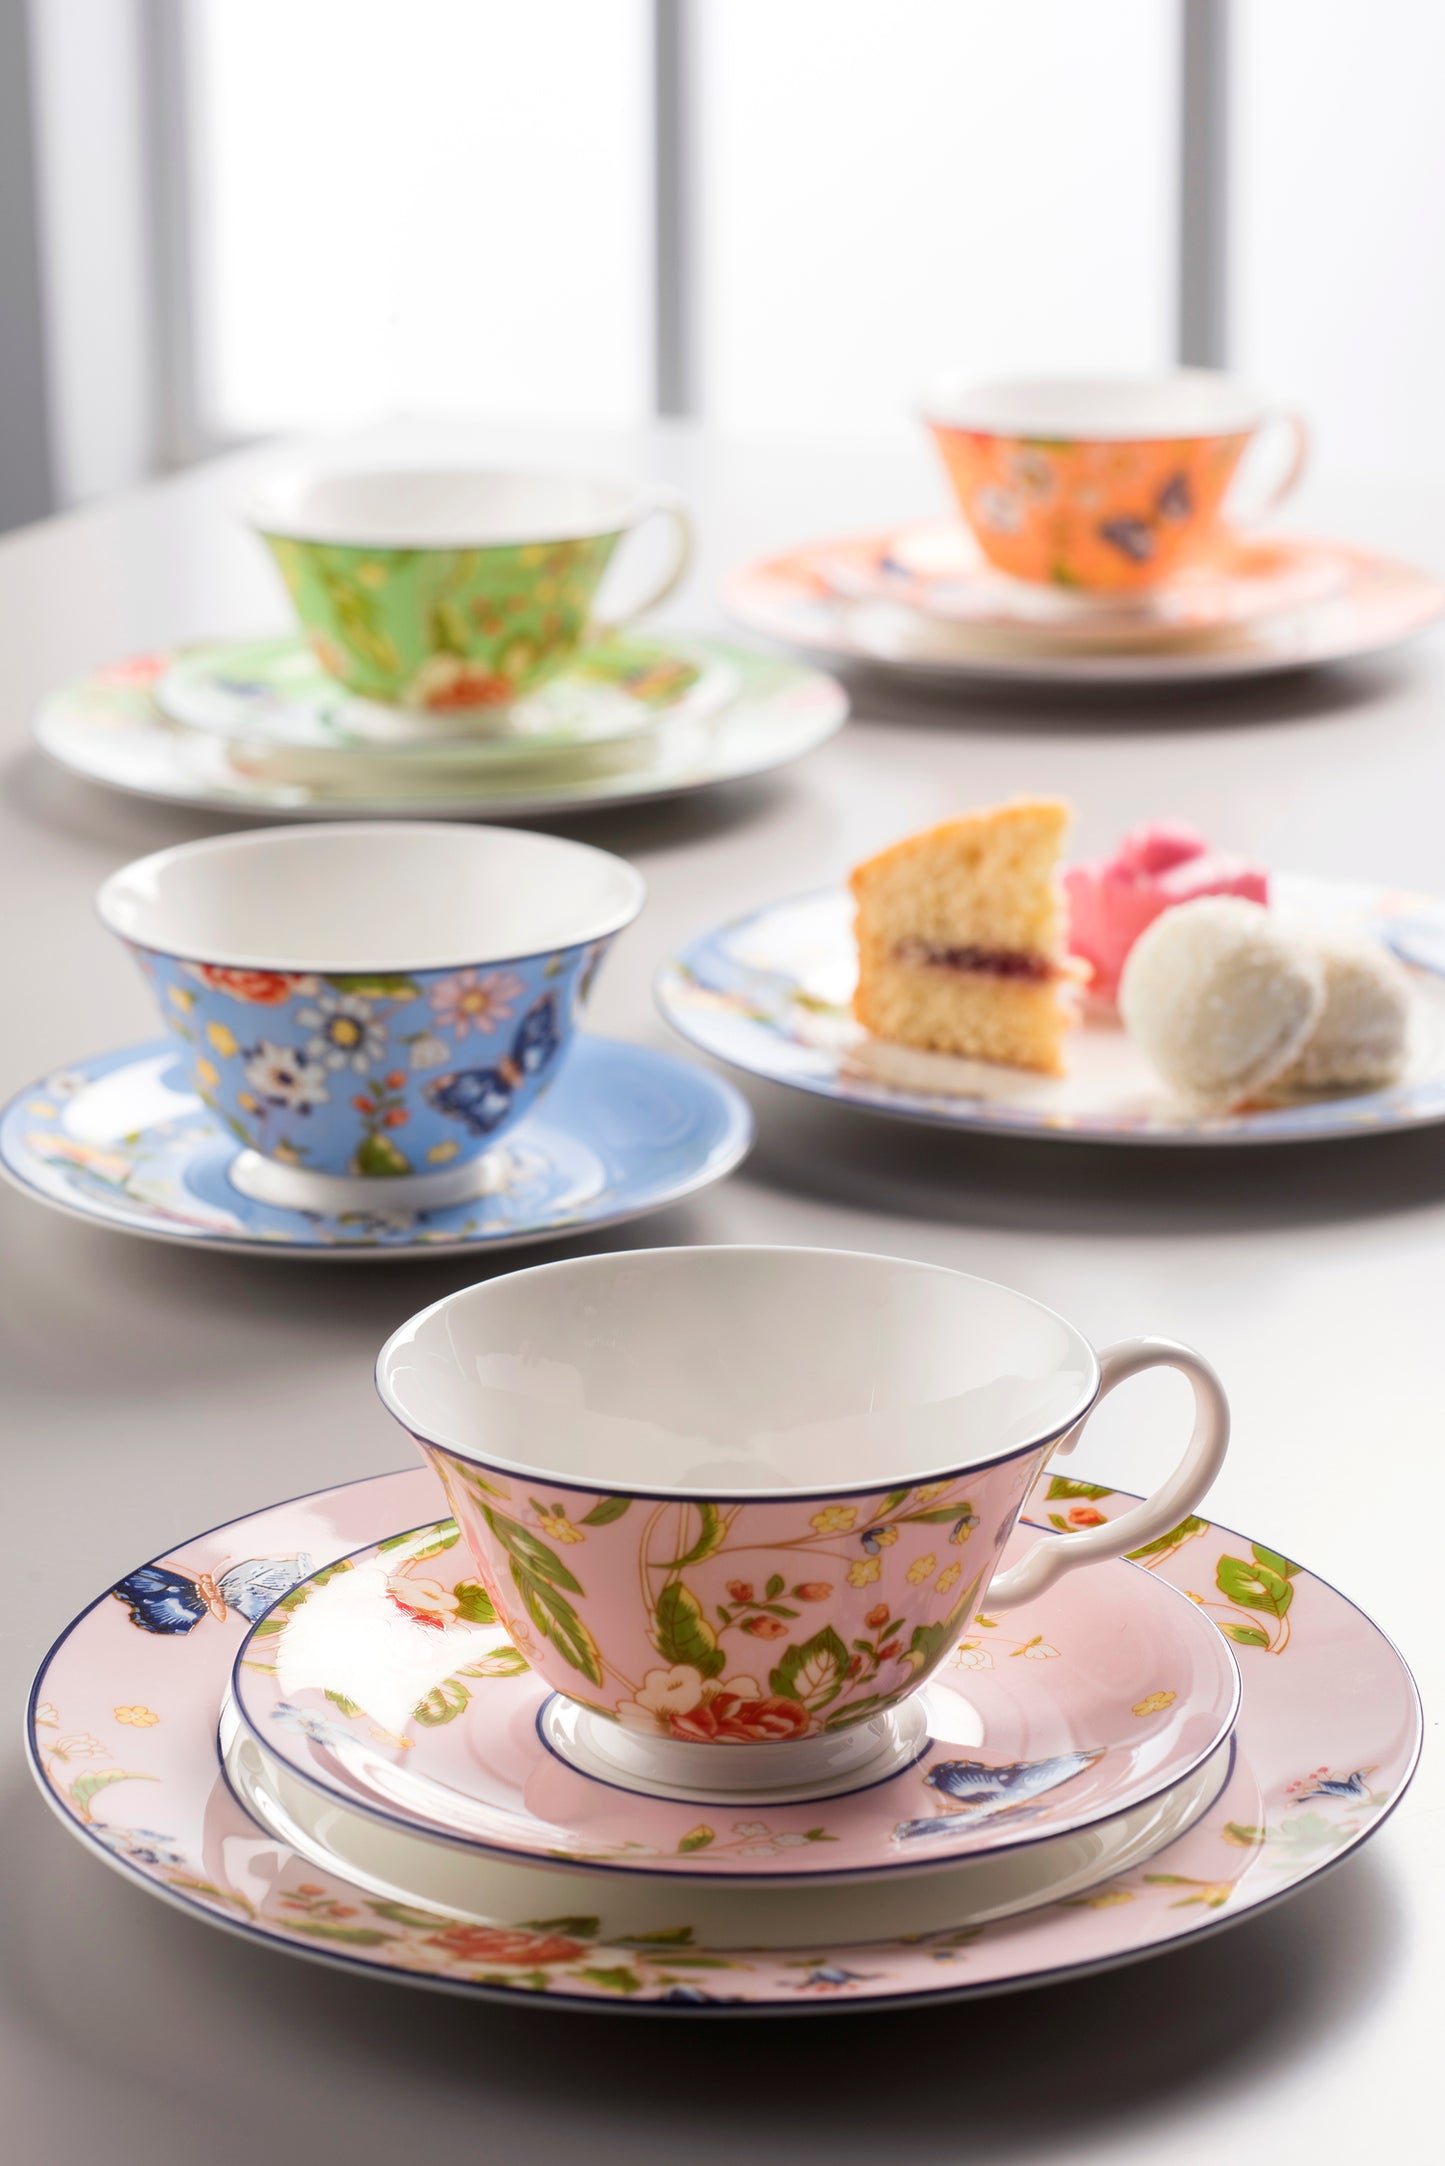 Aynsley Cottage Garden Windsor Tea Cup & Saucer Set